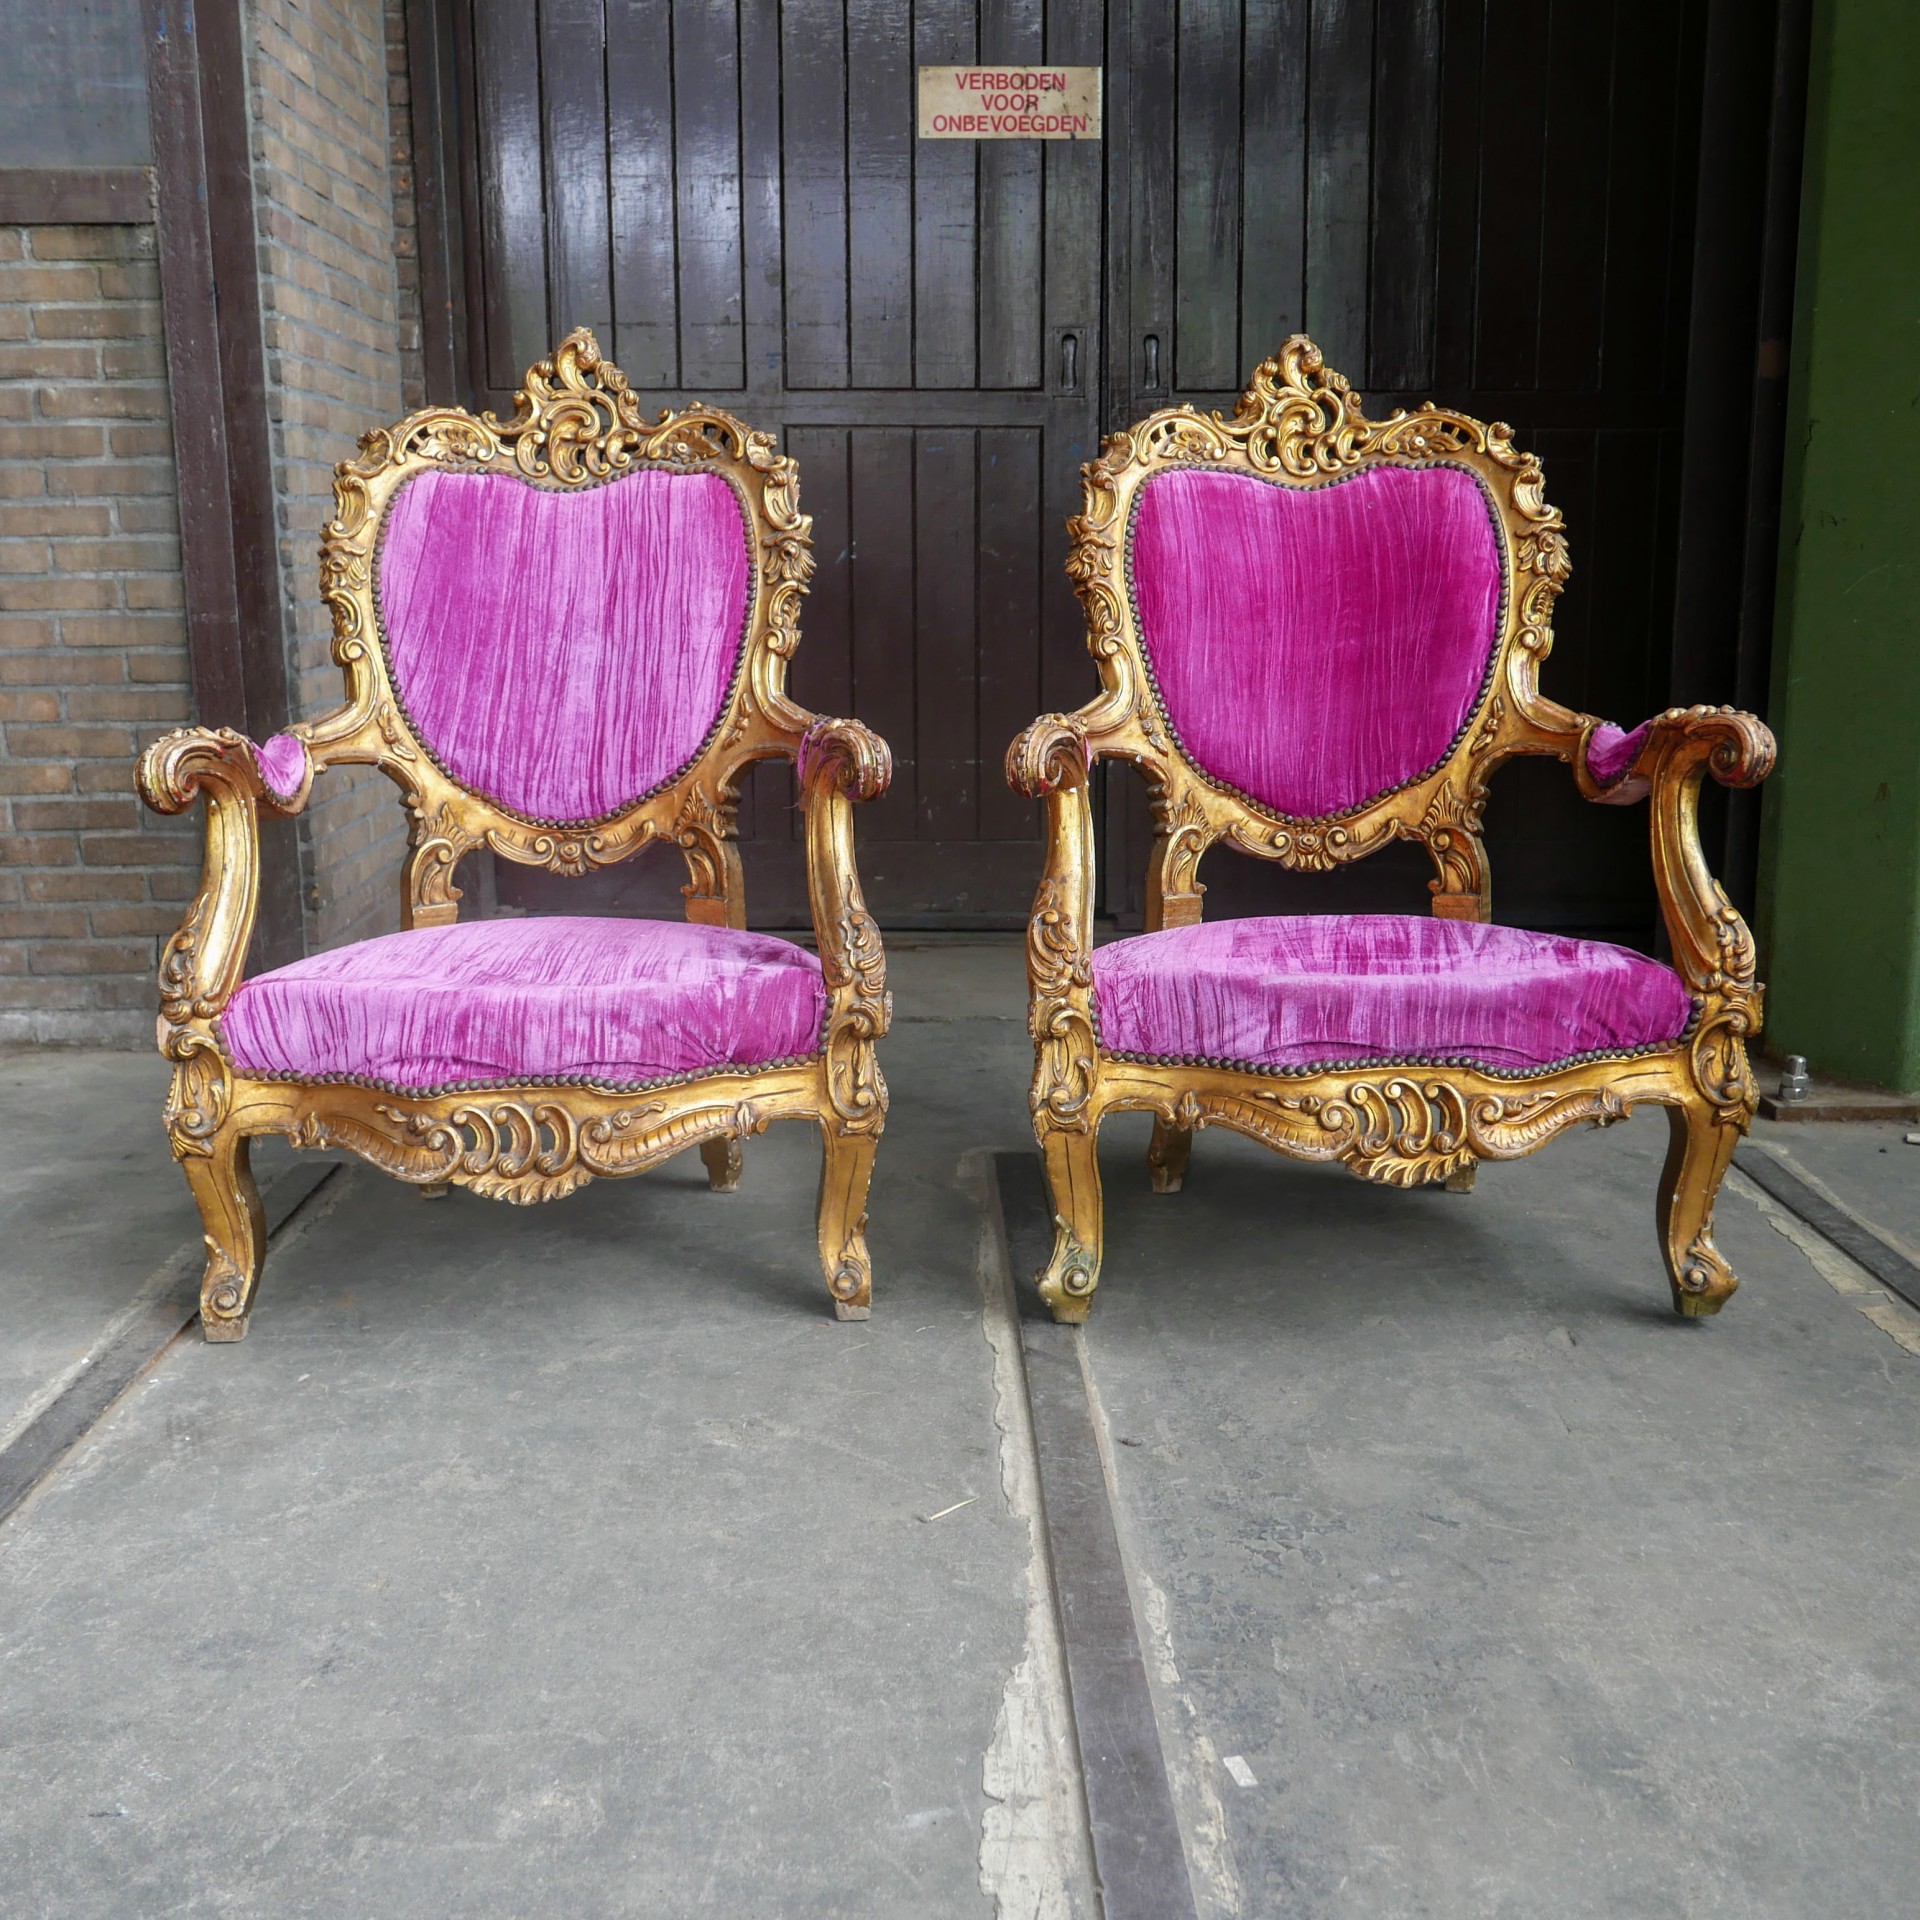 Fonkeling Verouderd bestellen Barok vergulde fauteuil » Van Dijk & Ko